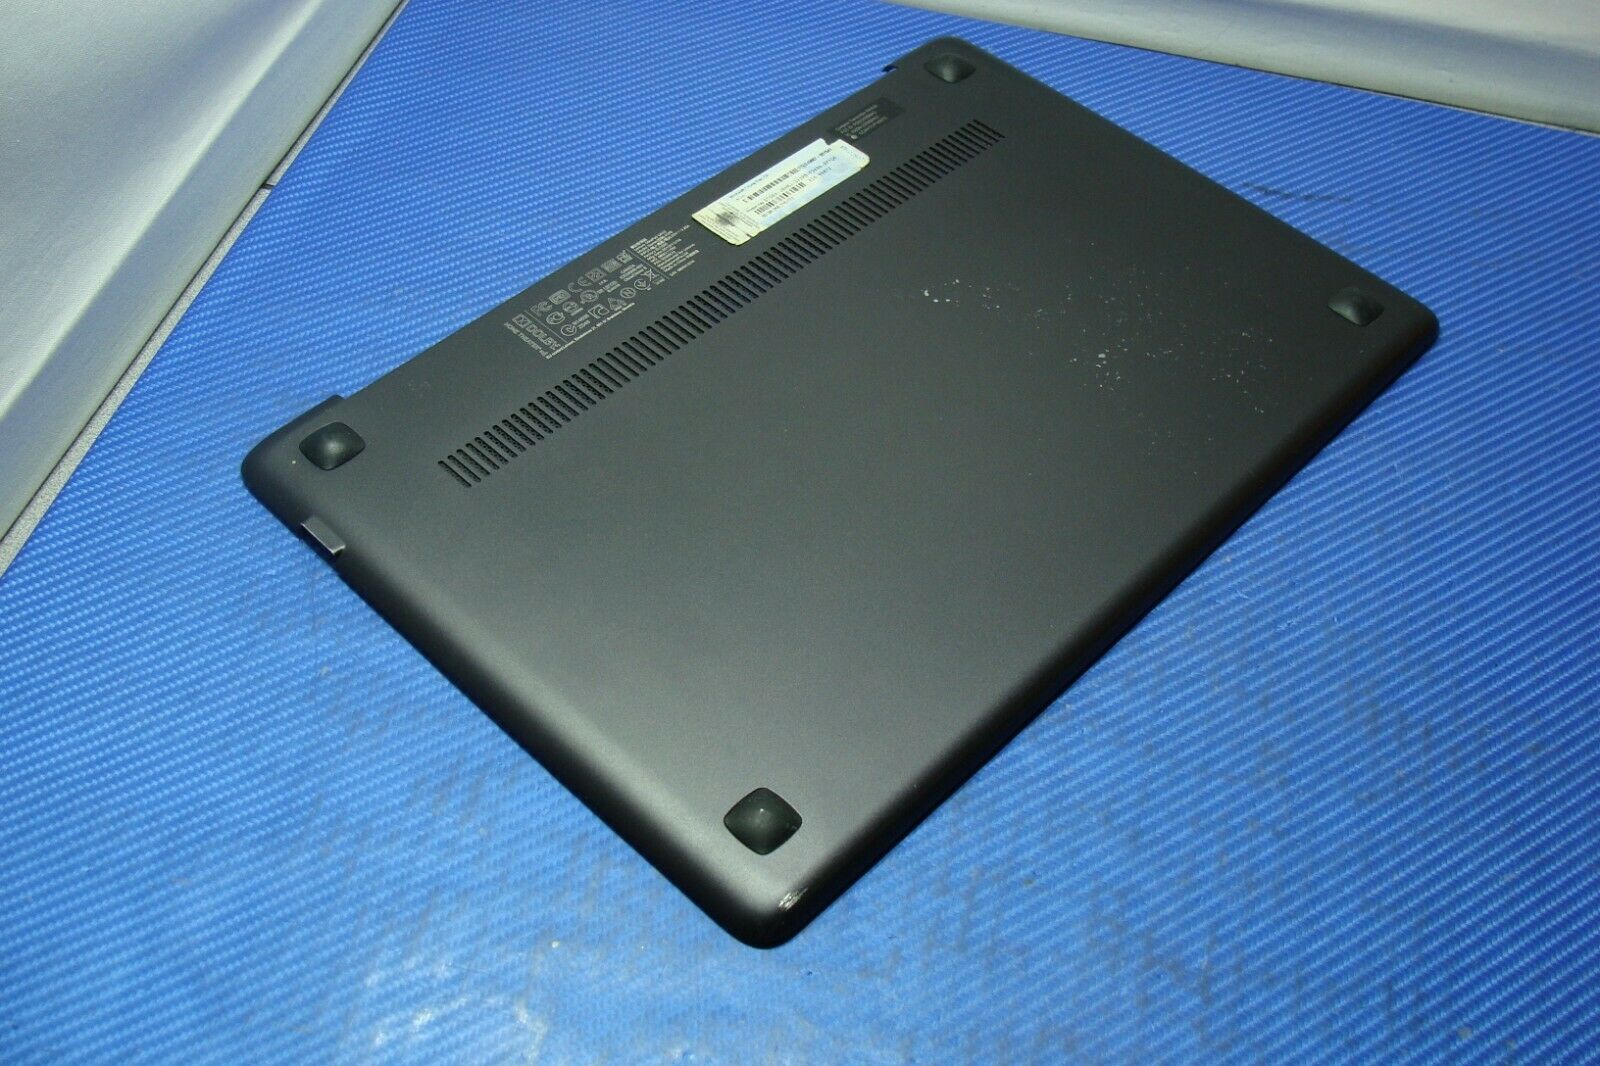 Lenovo IdeaPad U410 14